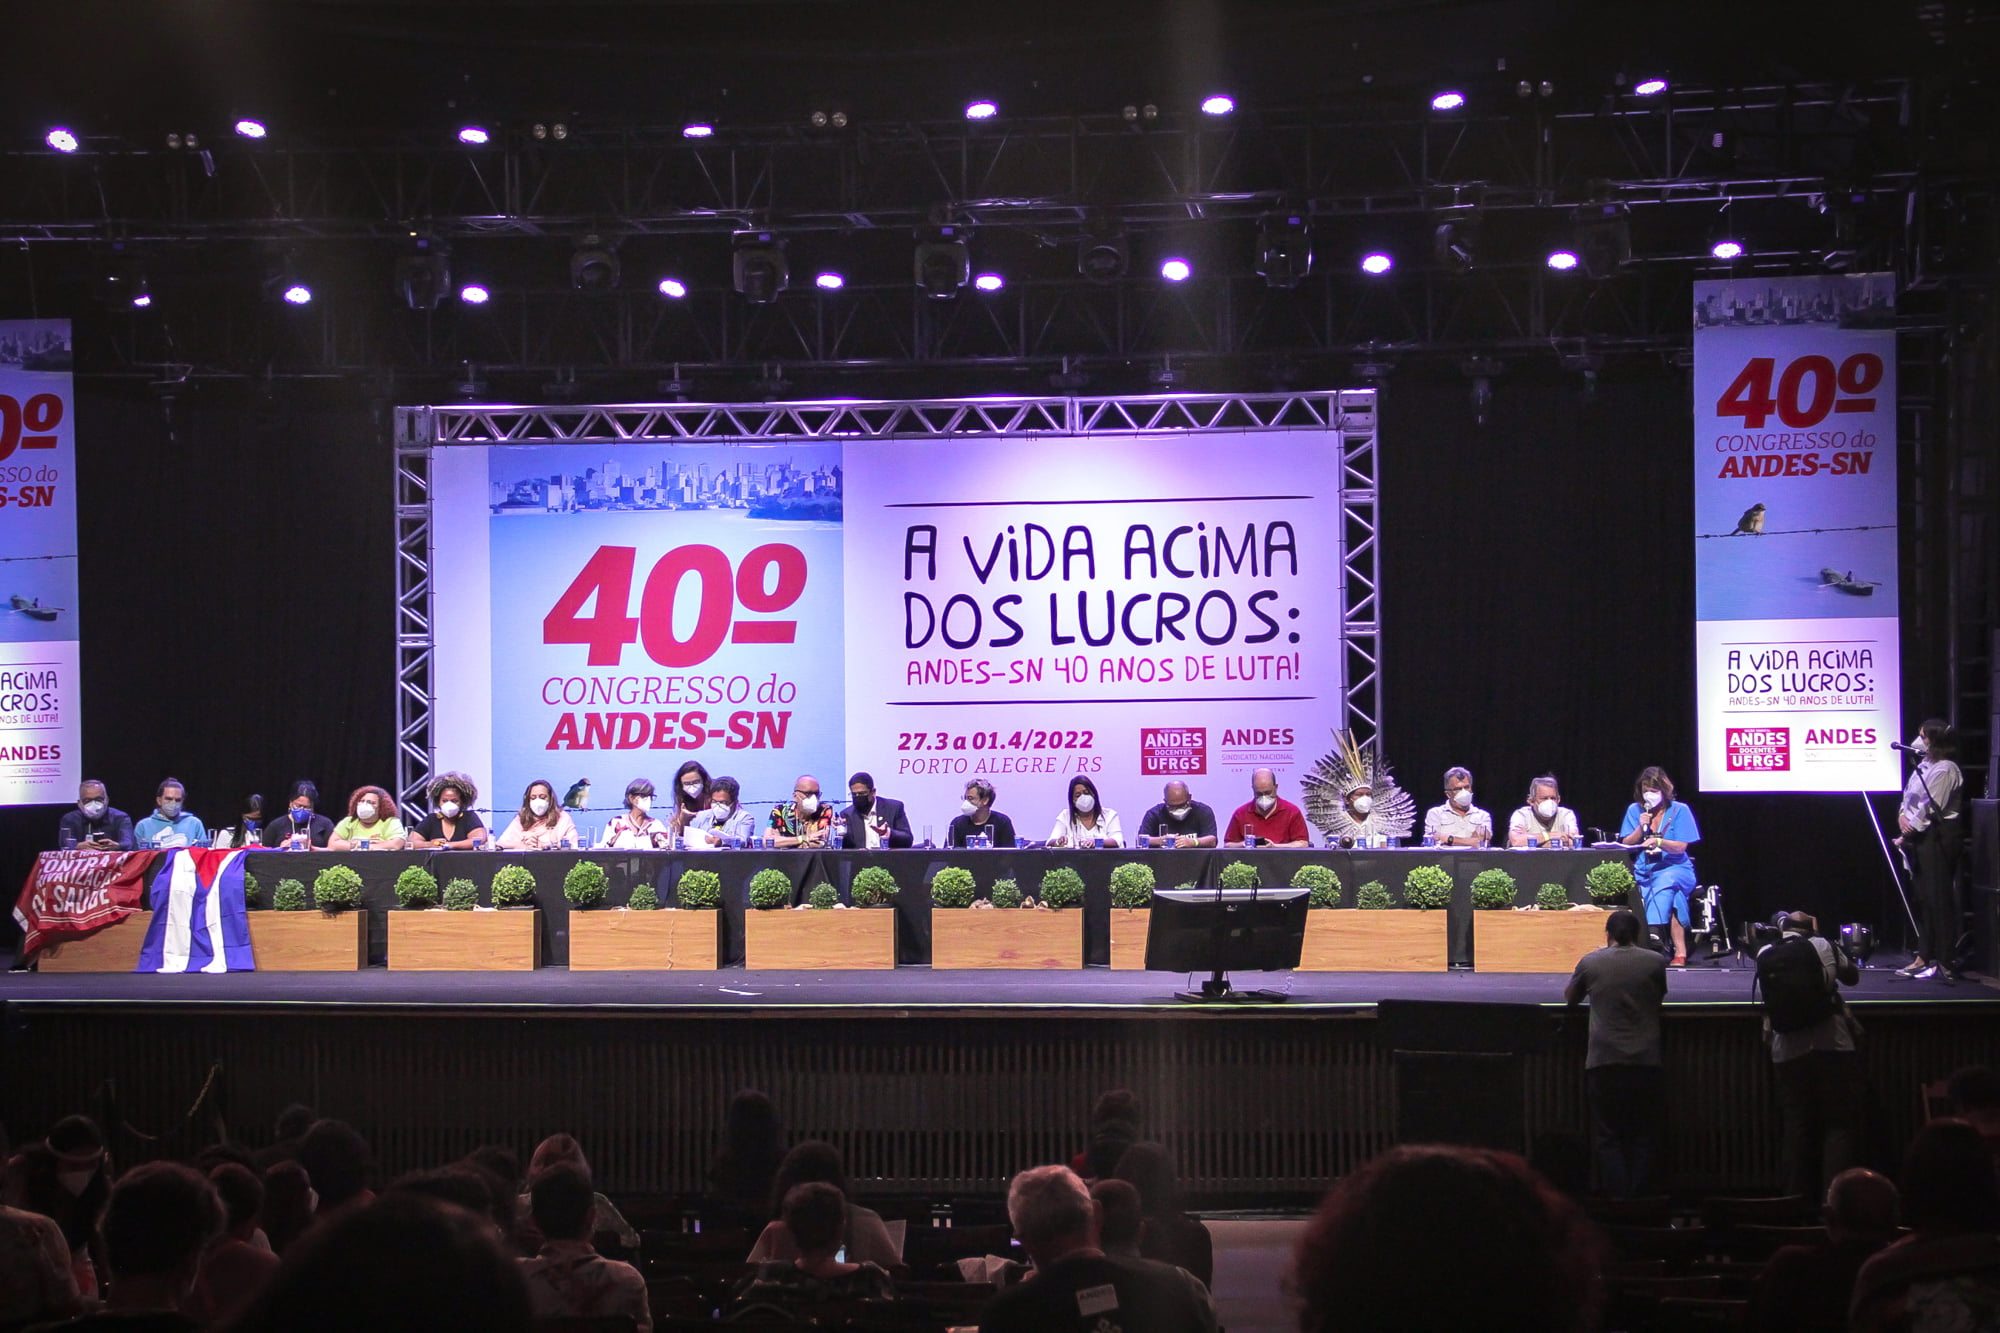 andes 40 congresso 05 — Vida acima dos lucros e fora Bolsonaro marcam abertura do 40º Congresso do ANDES-SN — ADunicamp